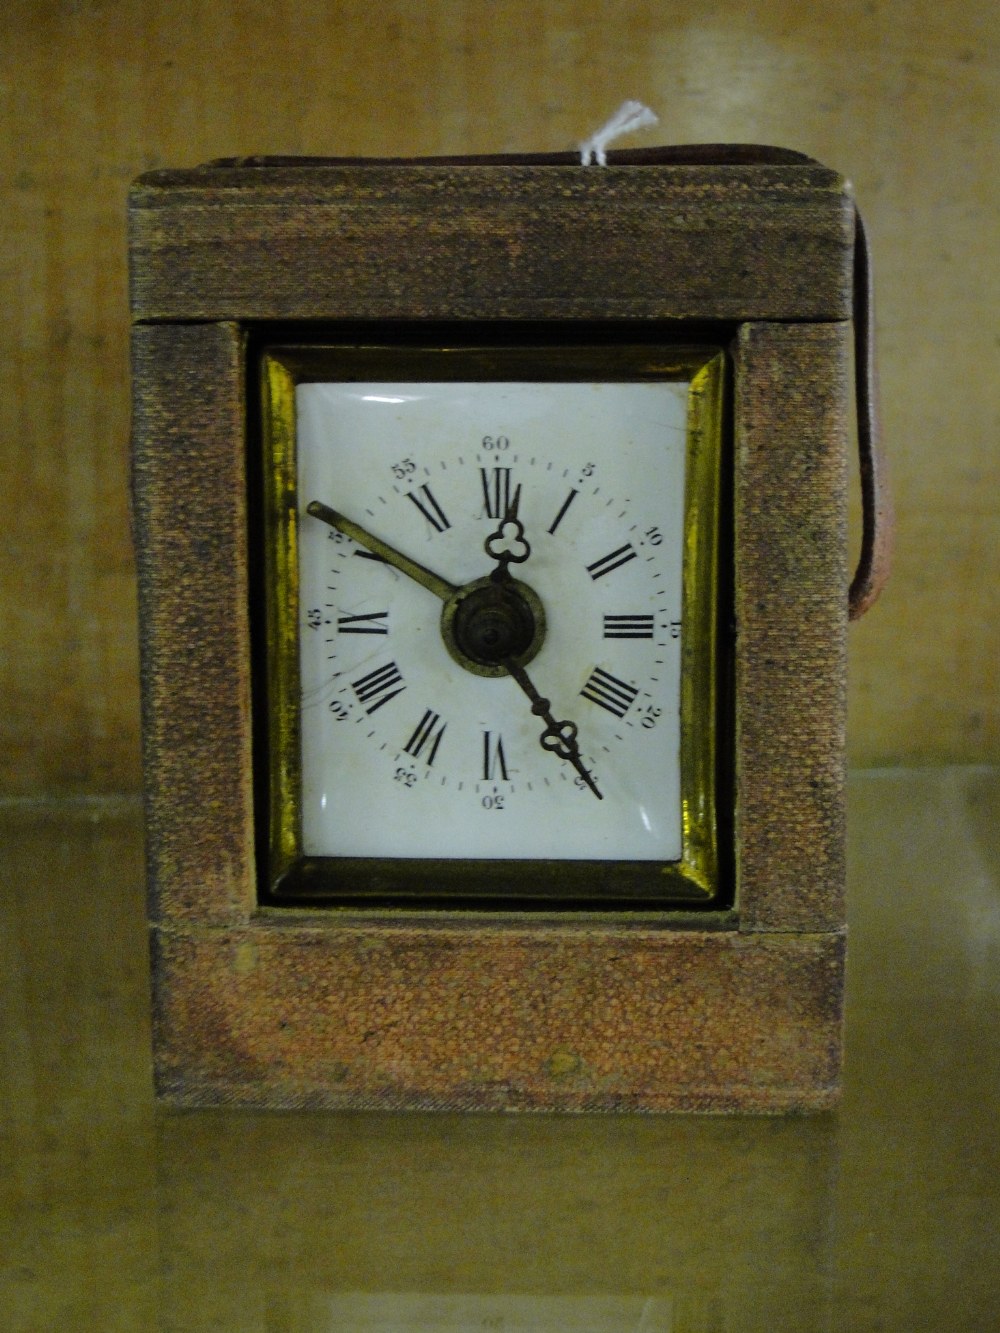 A carriage clock in case.